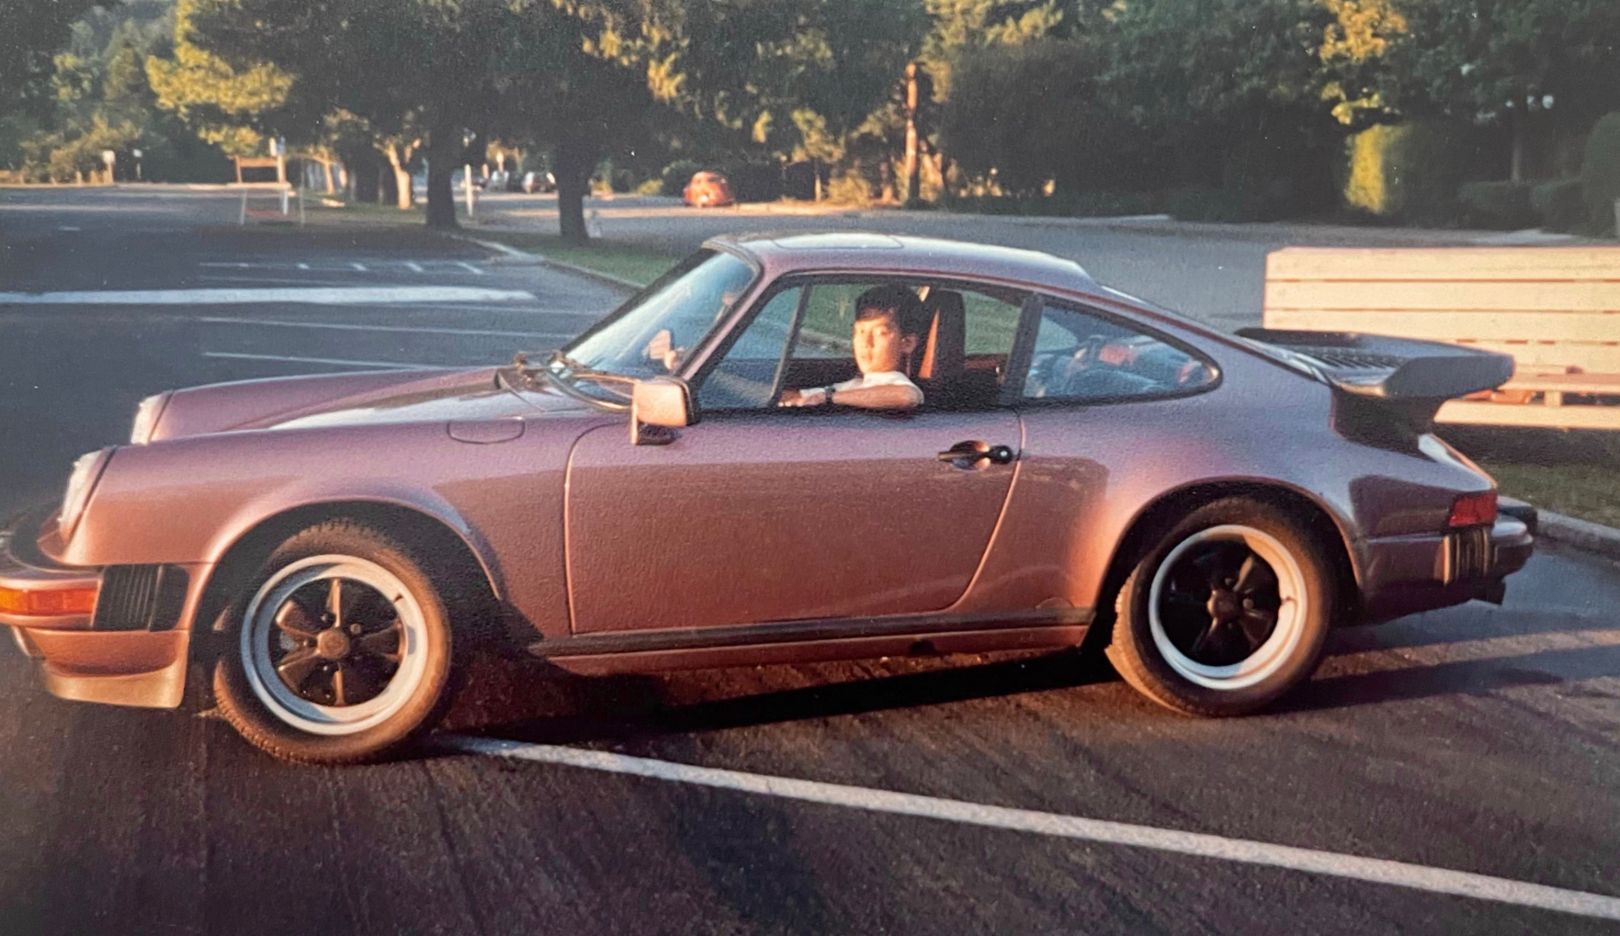 Первое знакомство с отцовским Porsche 911 — в тот день в школе 12-летний мальчик не мог дождаться возможности увидеть новый автомобиль. Тогда у Дэниэла Ву зародилось увлечение спорткарами и брендом Porsche. 